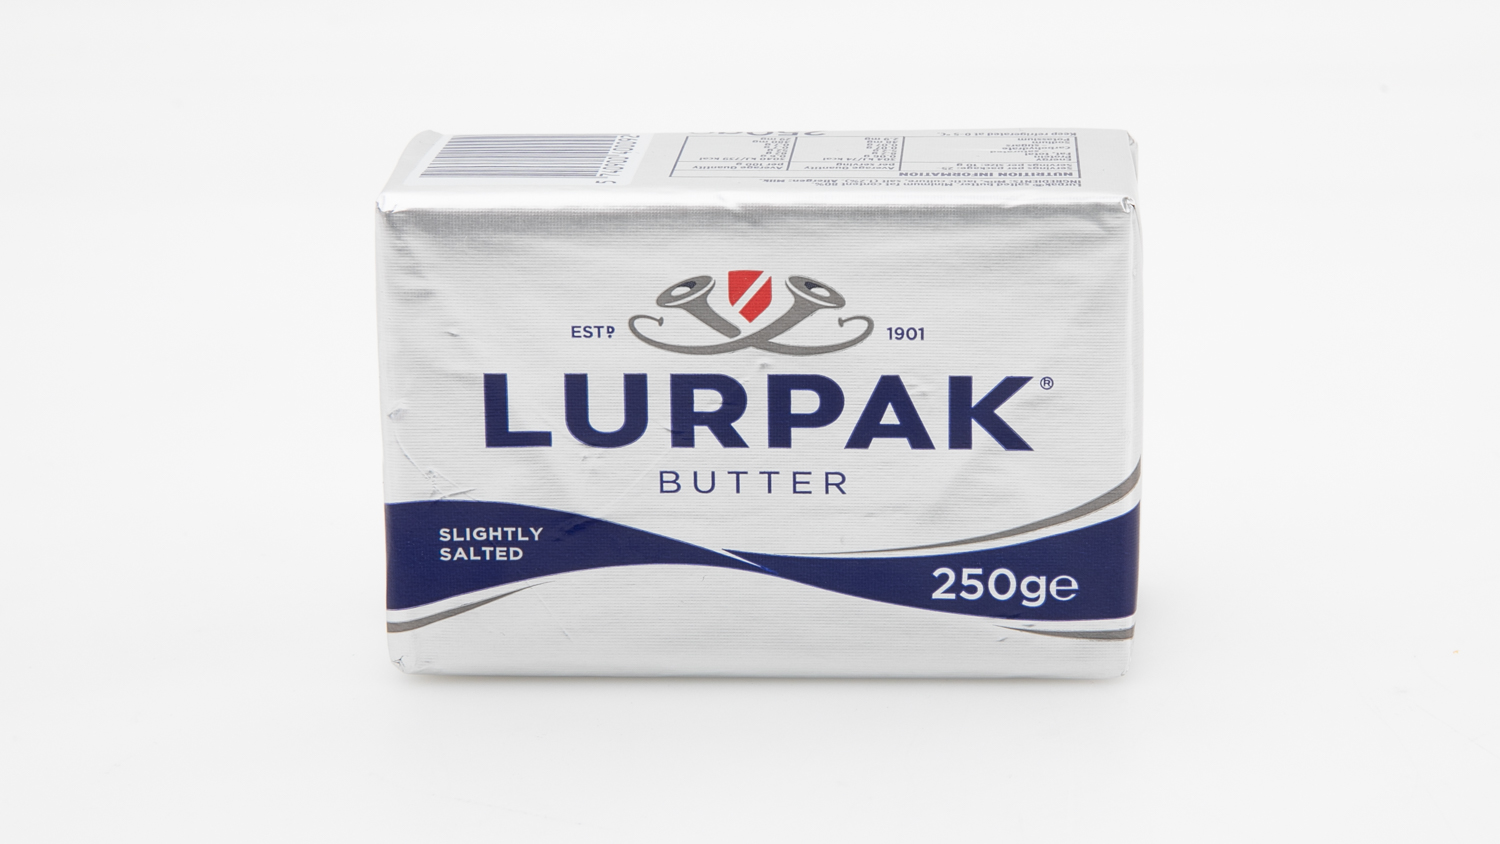 Lurpak Butter Slightly Salted carousel image